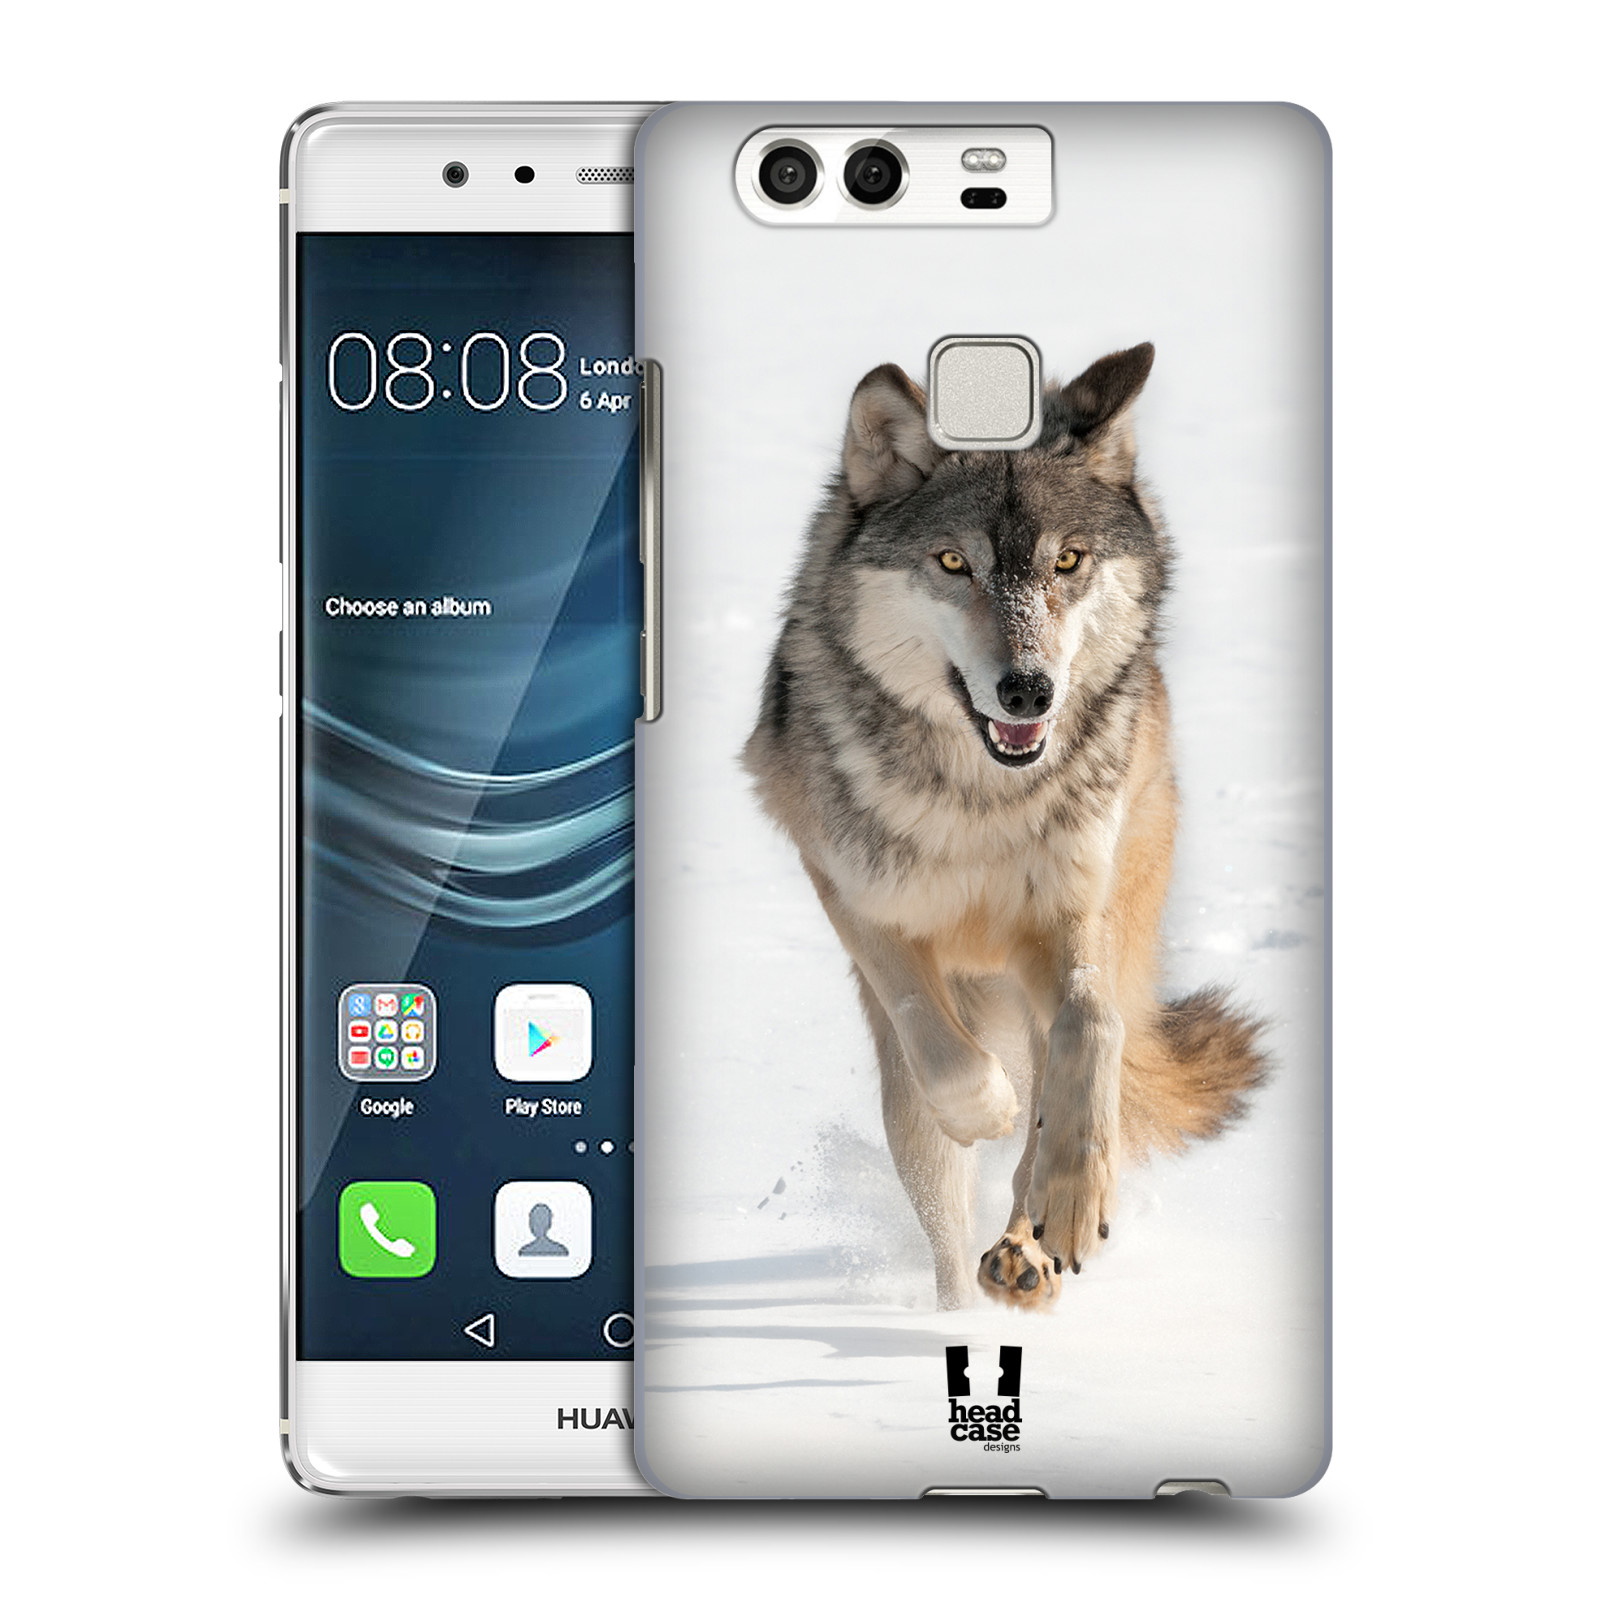 HEAD CASE plastový obal na mobil Huawei P9 / P9 DUAL SIM vzor Divočina, Divoký život a zvířata foto BĚŽÍCÍ VLK